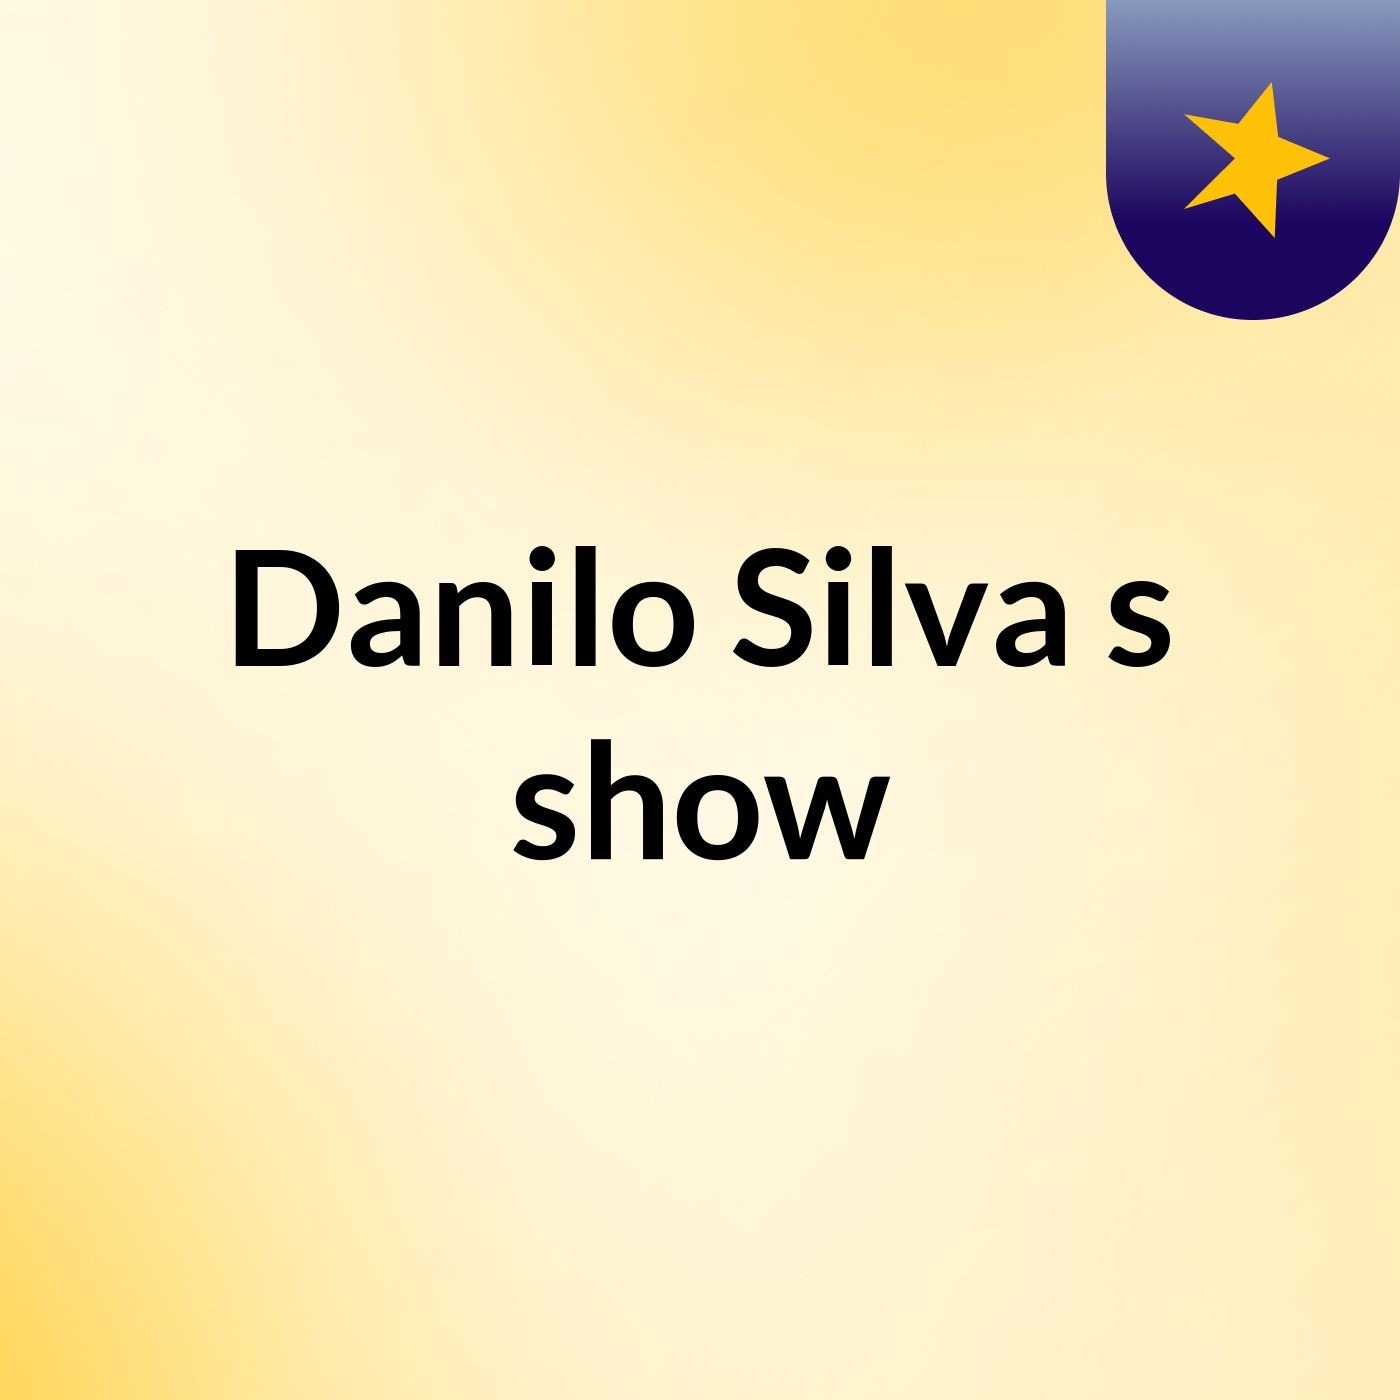 Danilo Silva's show